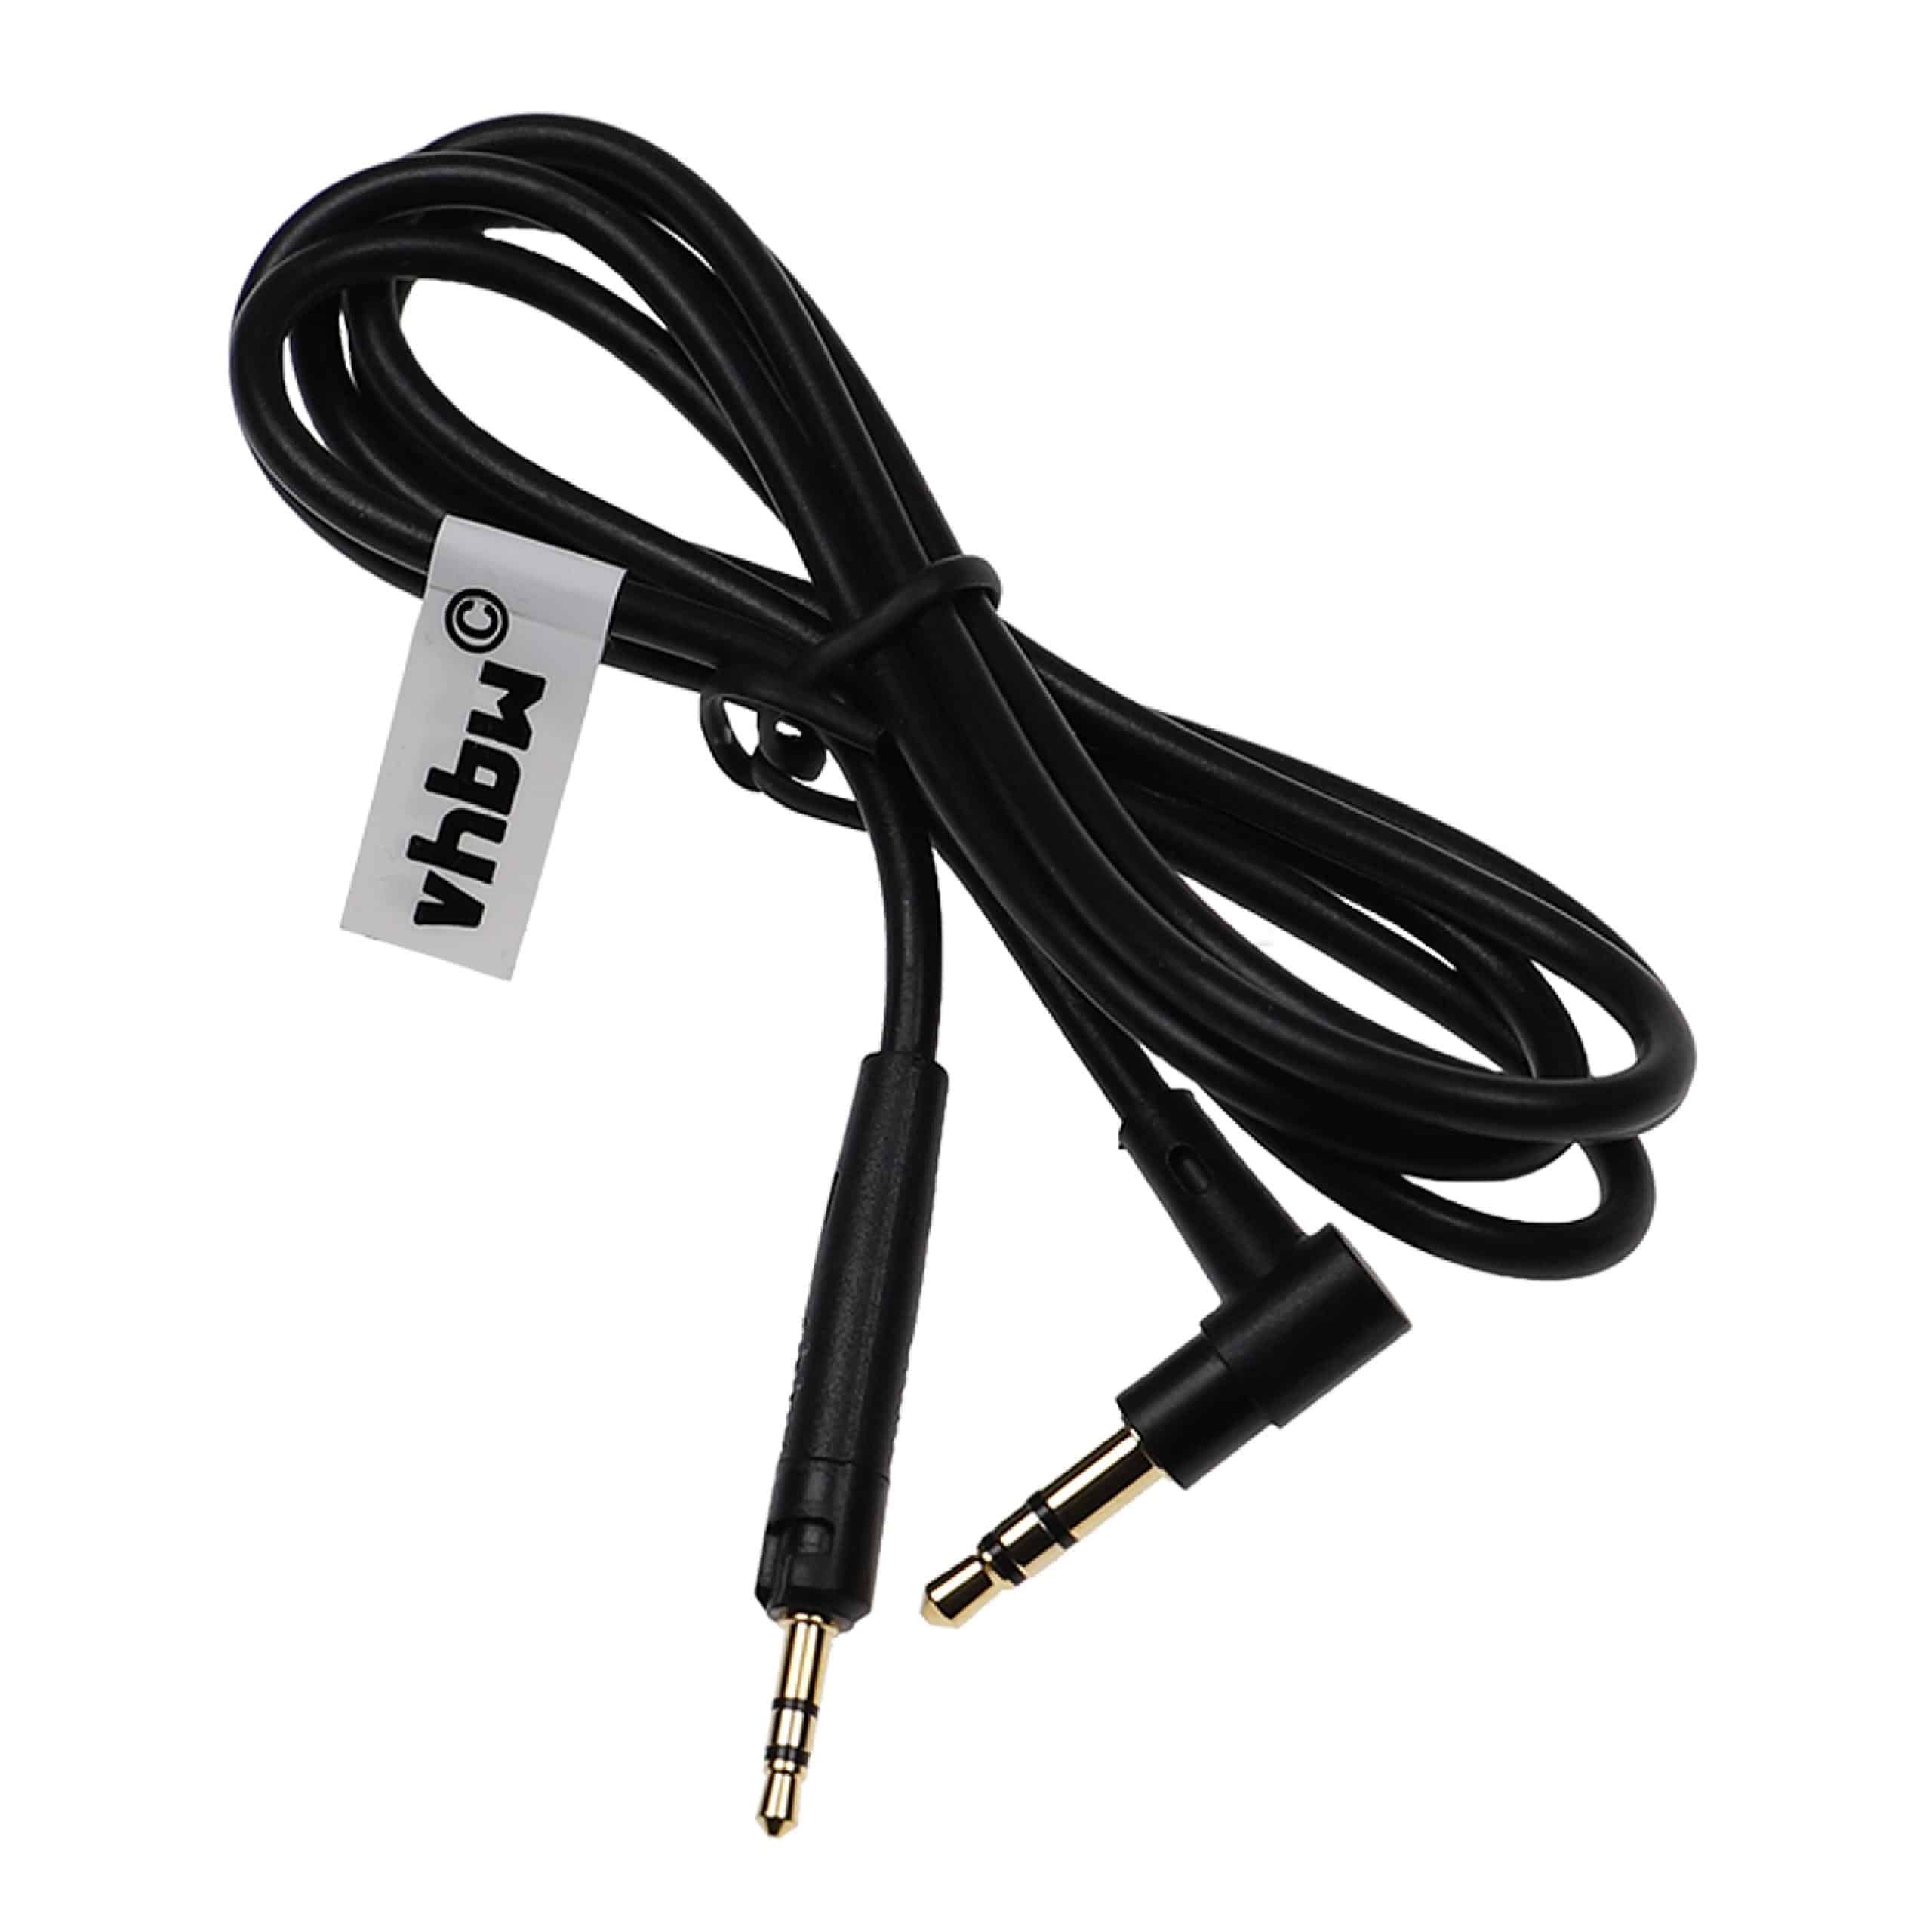 Cable audio AUX a conector jack de 3,5 mm para auriculares AKG, etc.